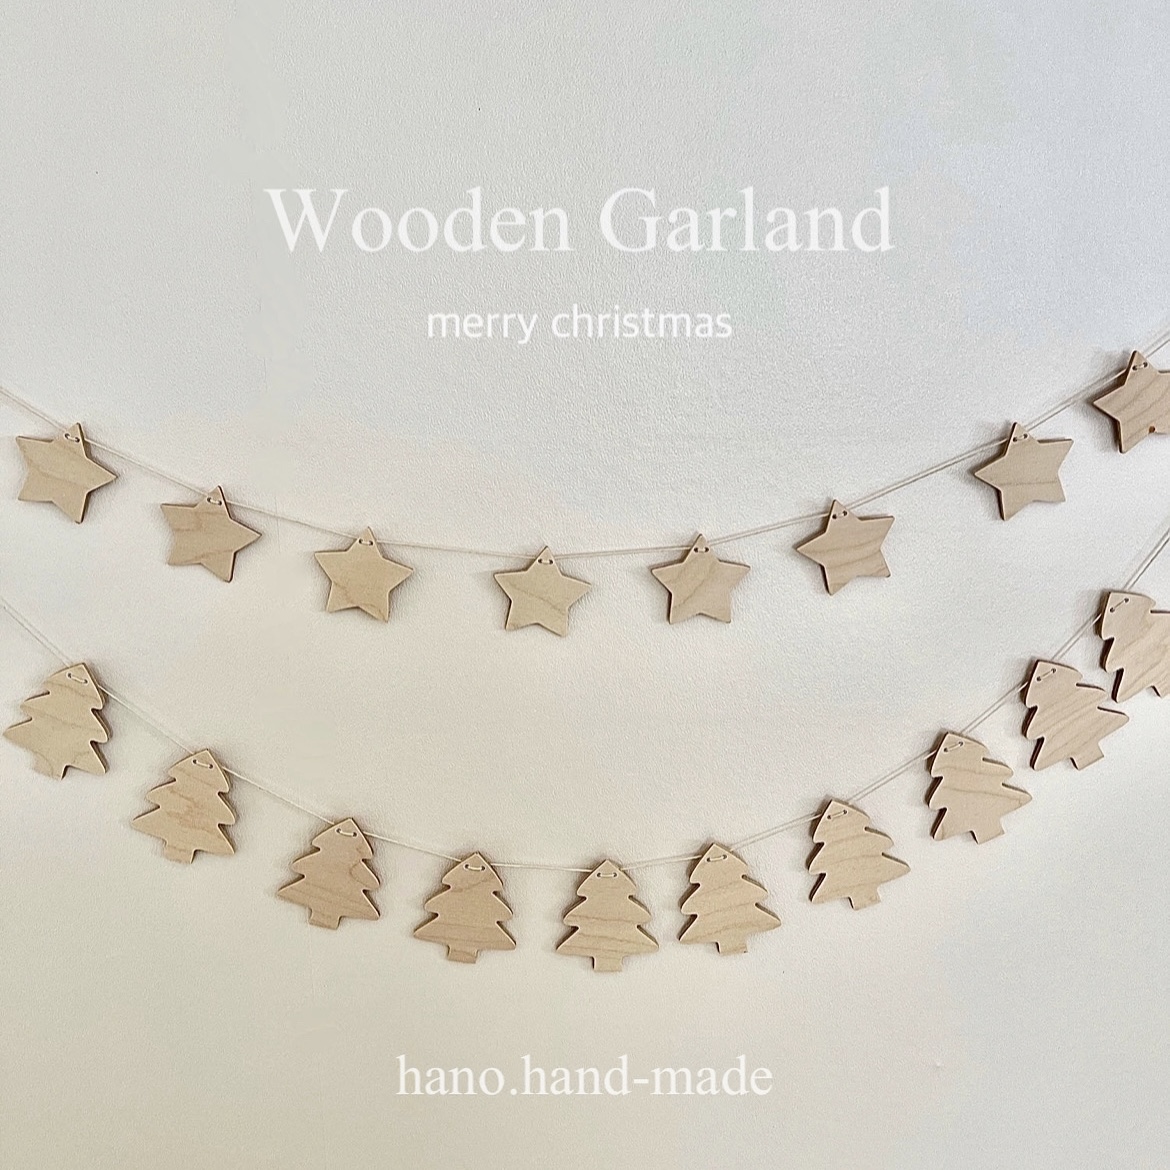 Wooden Garland